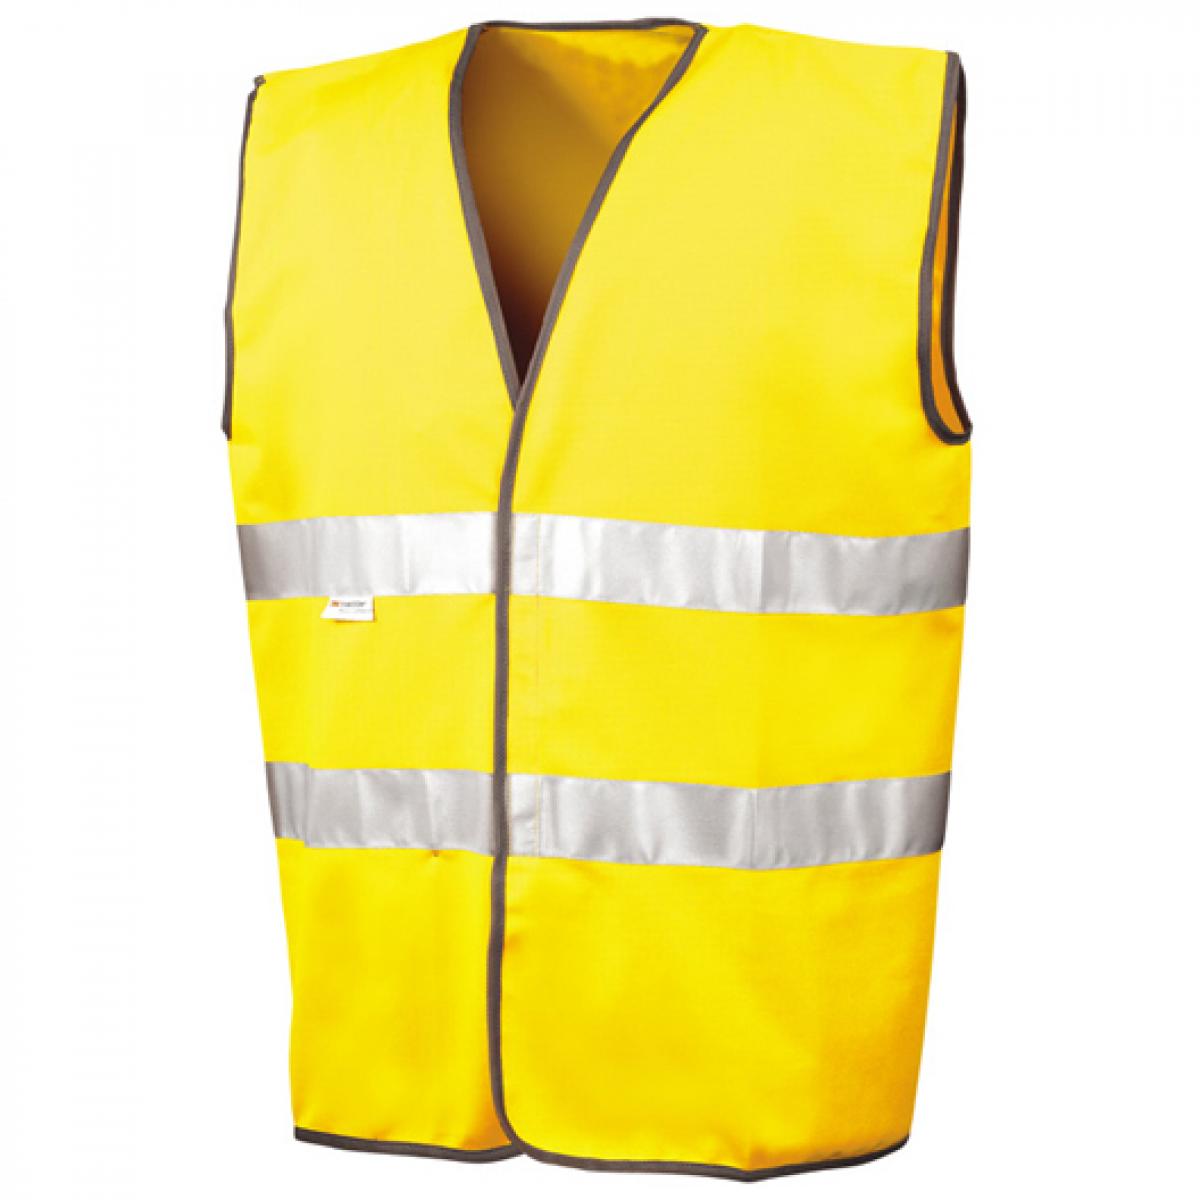 Hersteller: Result Herstellernummer: R211X Artikelbezeichnung: Herren Motorist Safety Vest EN471 /  nach ISOEN20471:2013 Farbe: Fluorescent Yellow